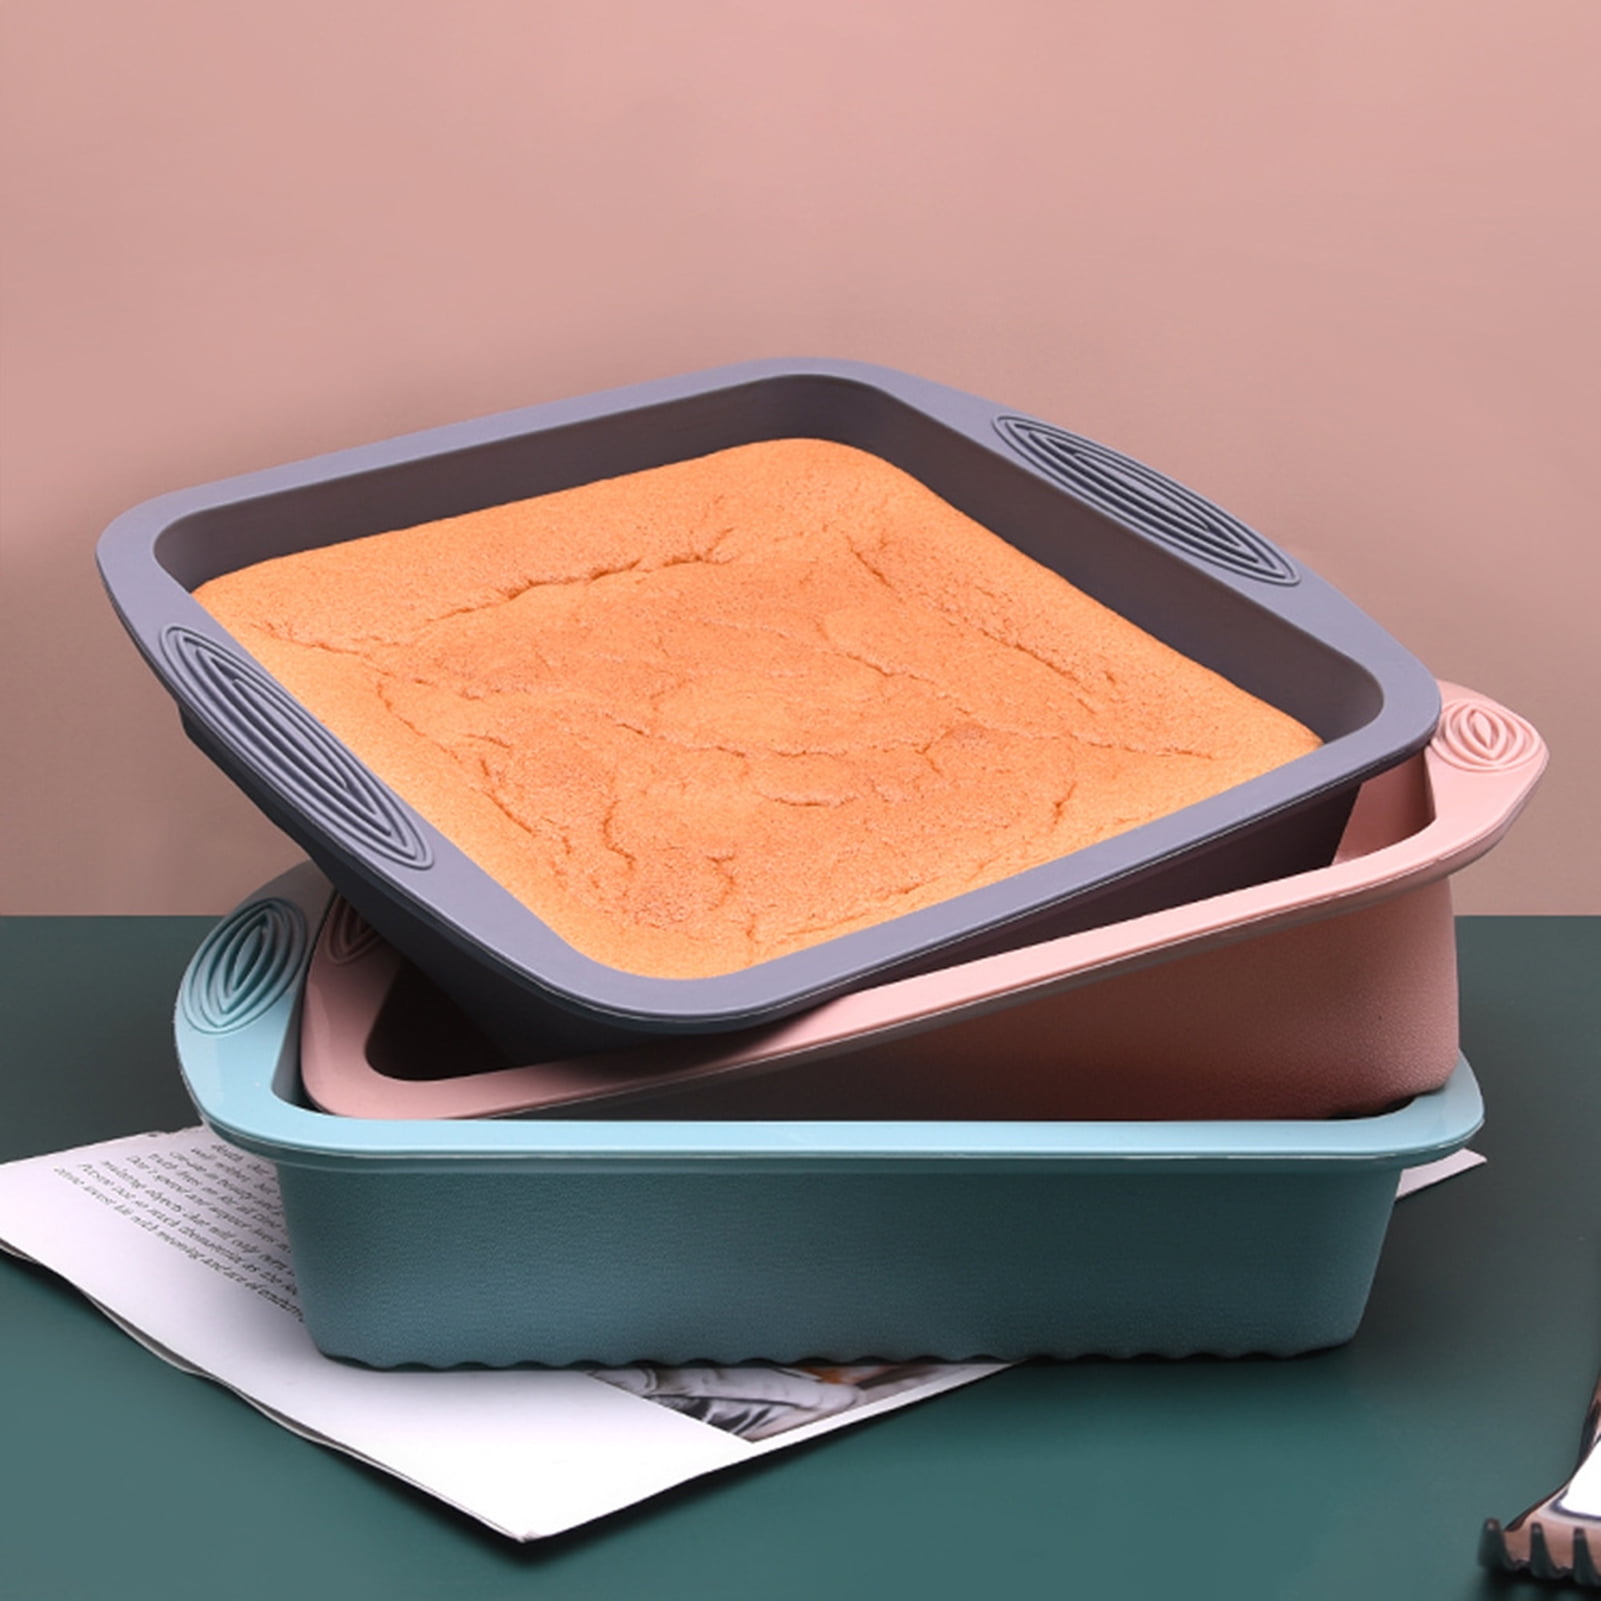  SILIVO 8 inch Silicone Square Cake Pan, 8x8 Baking Pan